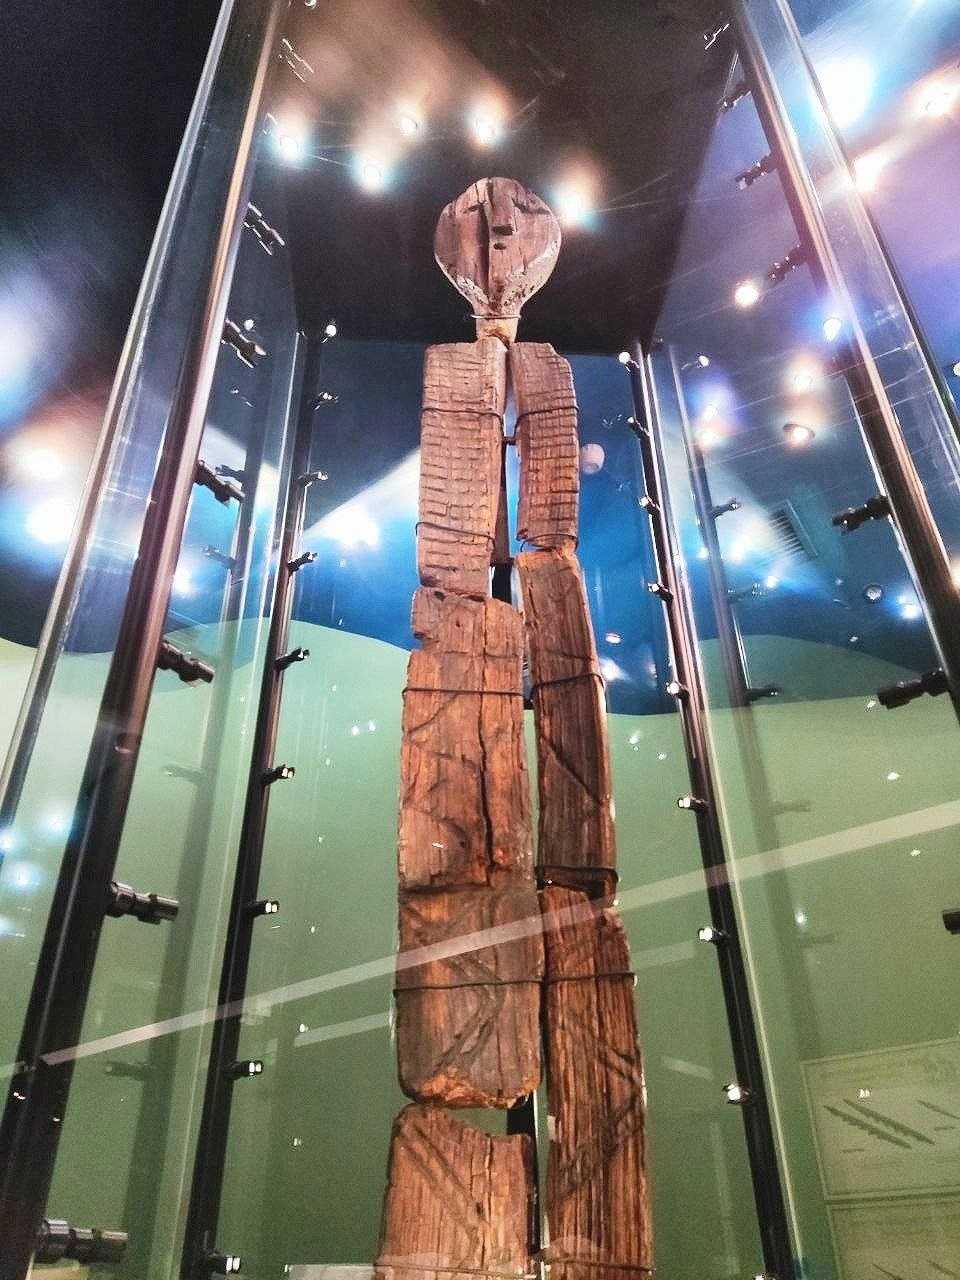 Археологический памятник большой шигирский идол известный тем